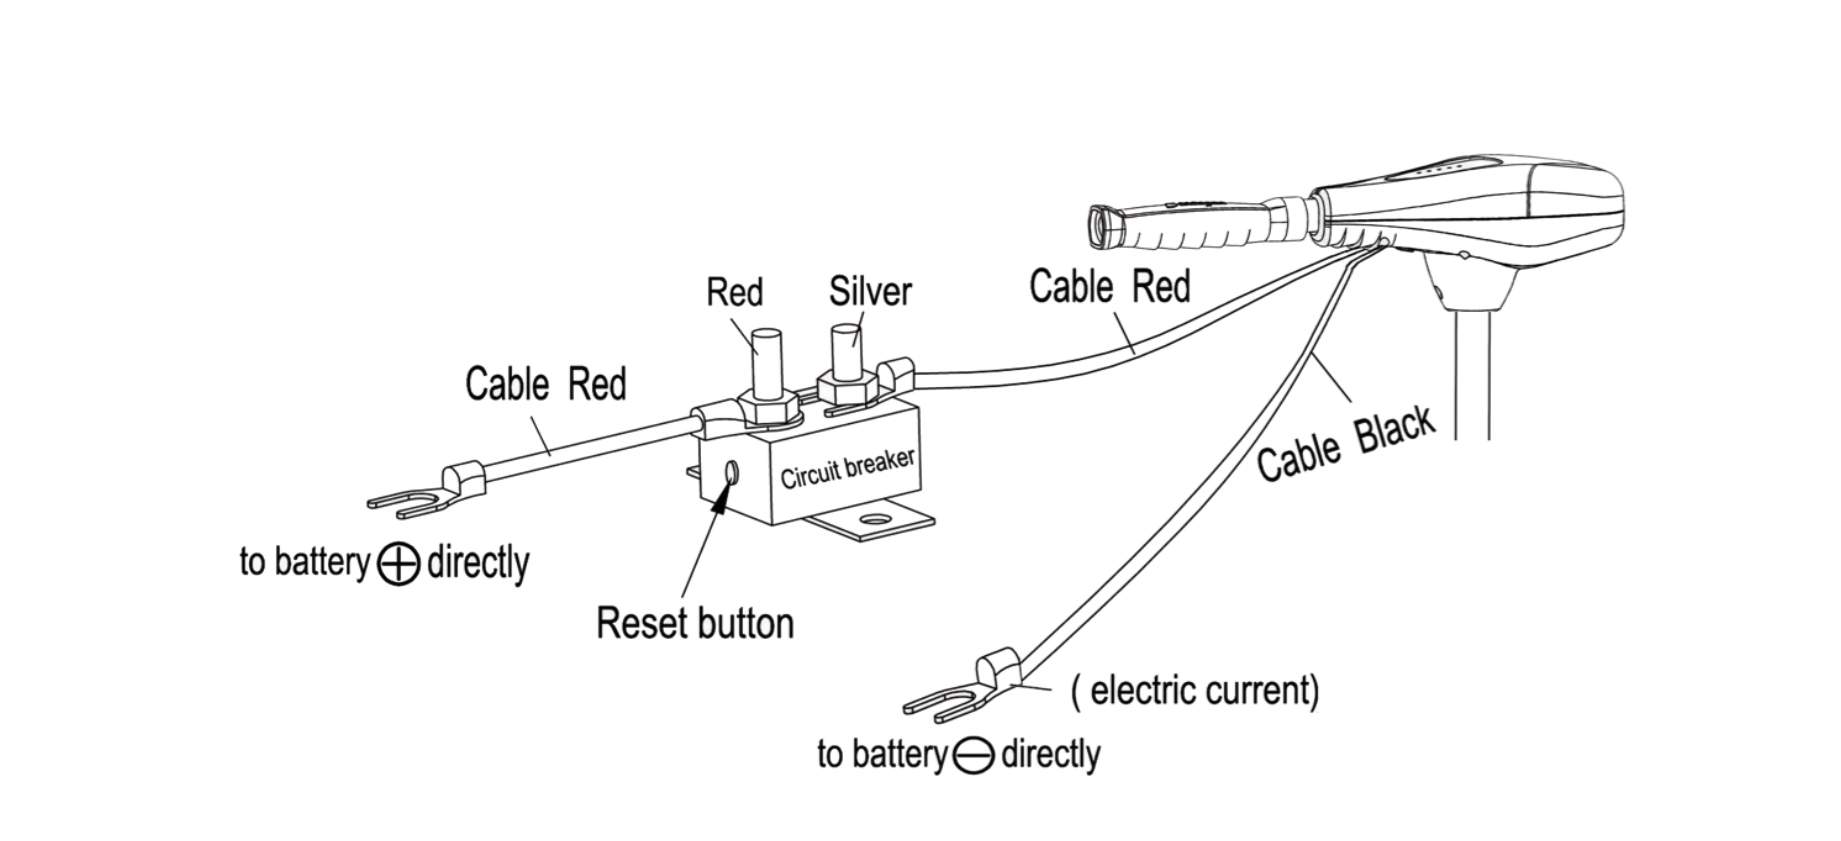 circuit_breaker_set_up_diagram.png